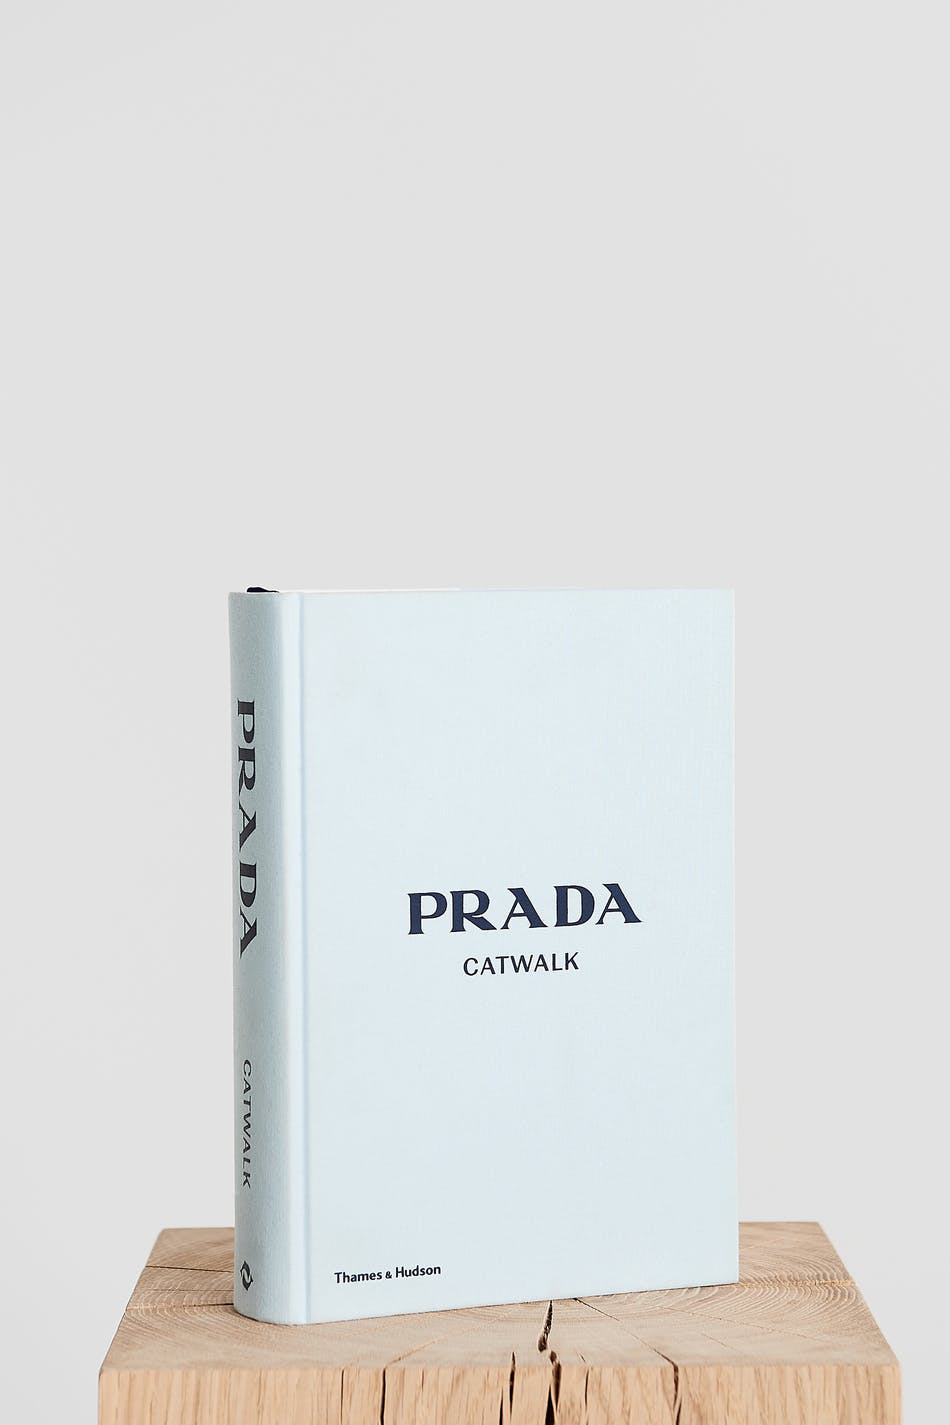 New mags Prada book